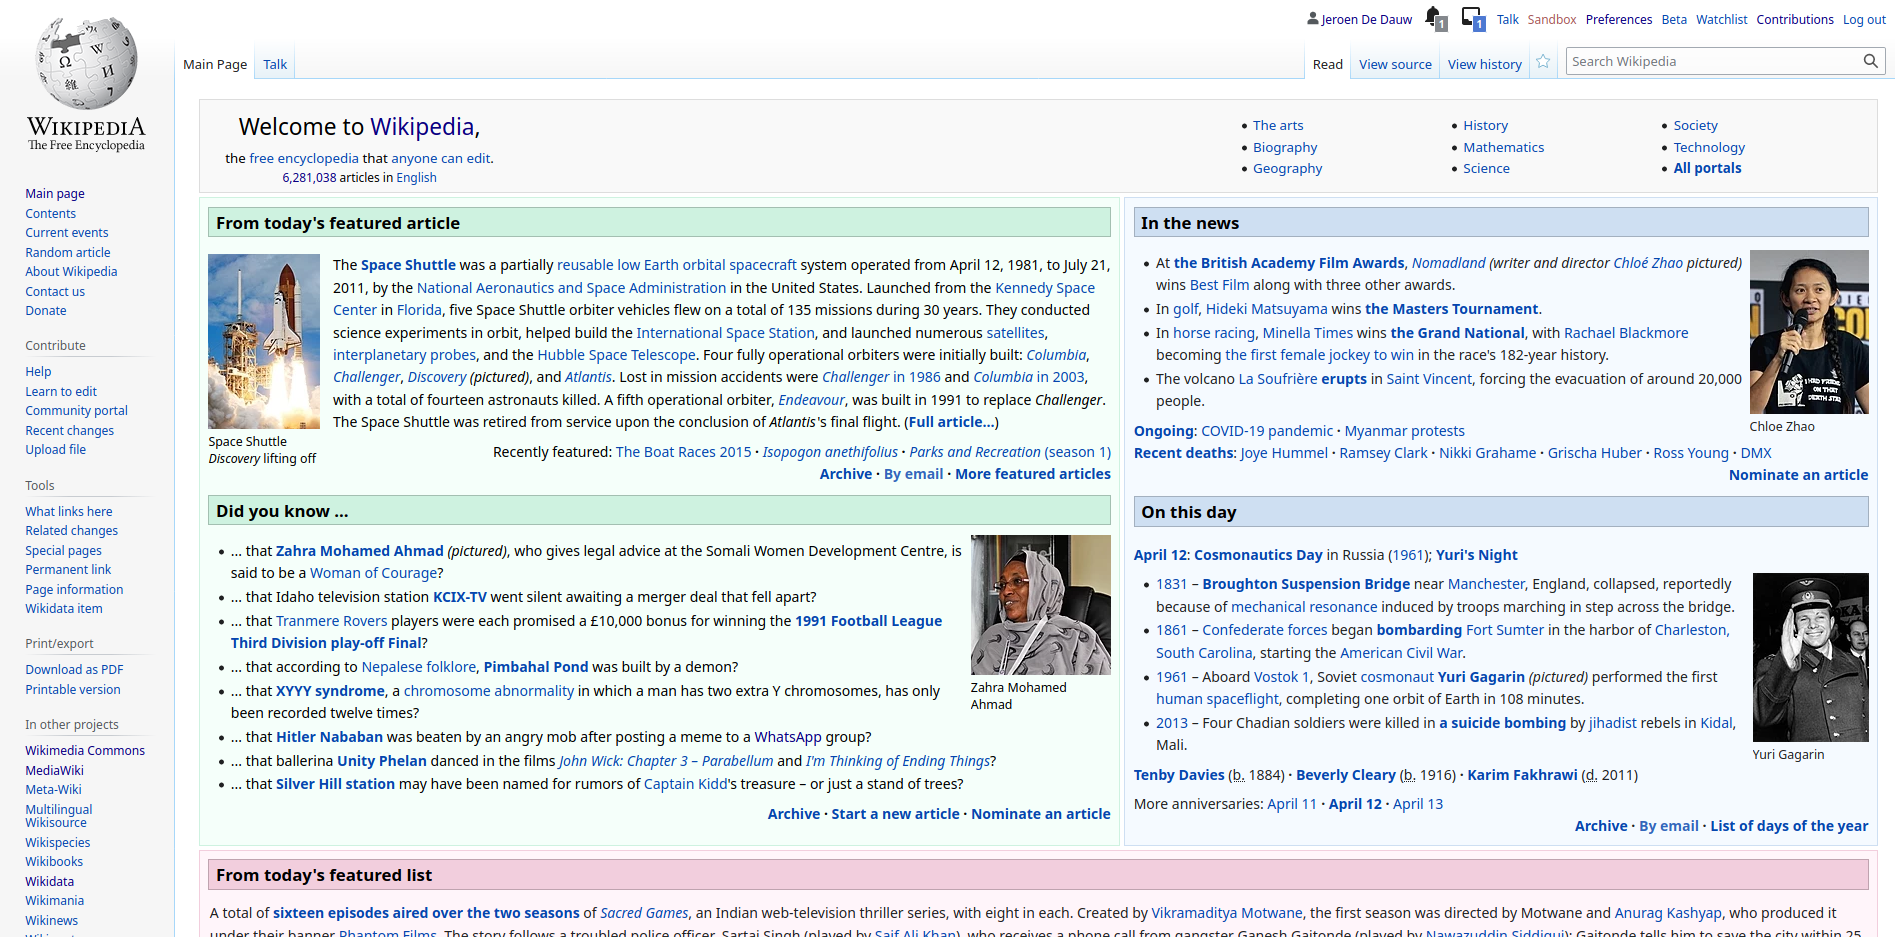 John Wick: Chapter 2 - Wikipedia